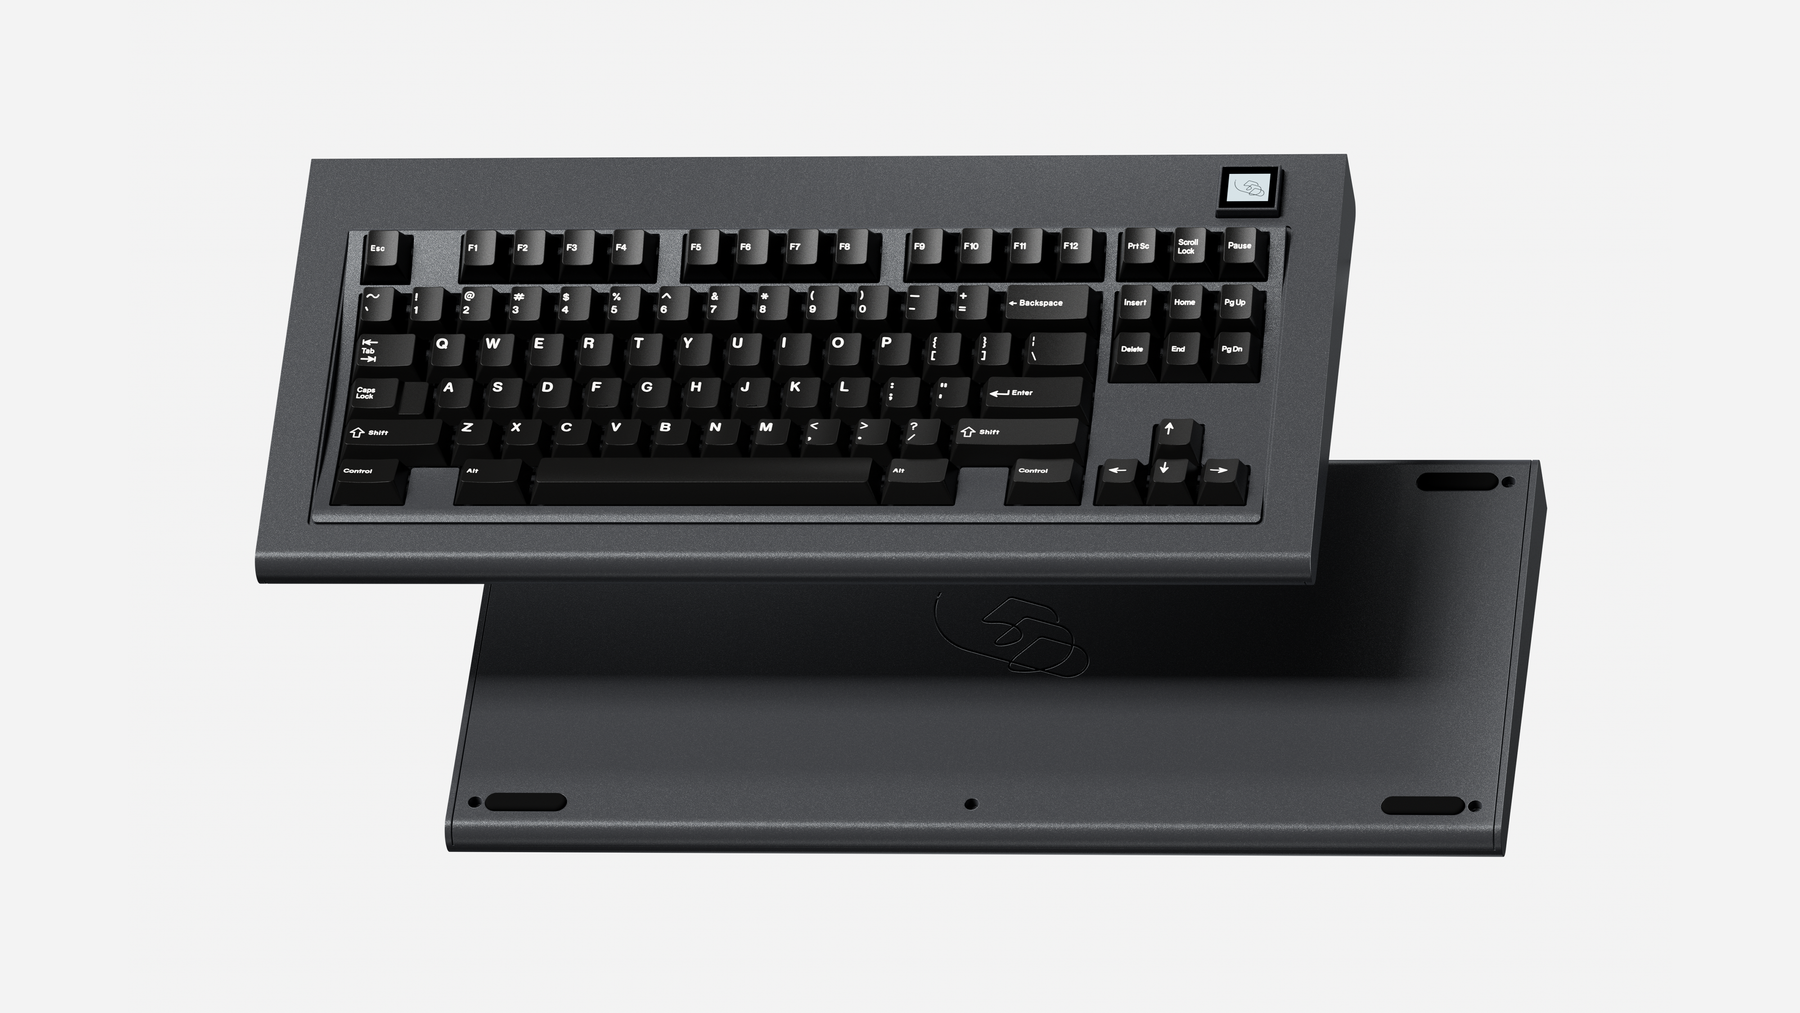 [GB] Model OLED Keyboard Kit